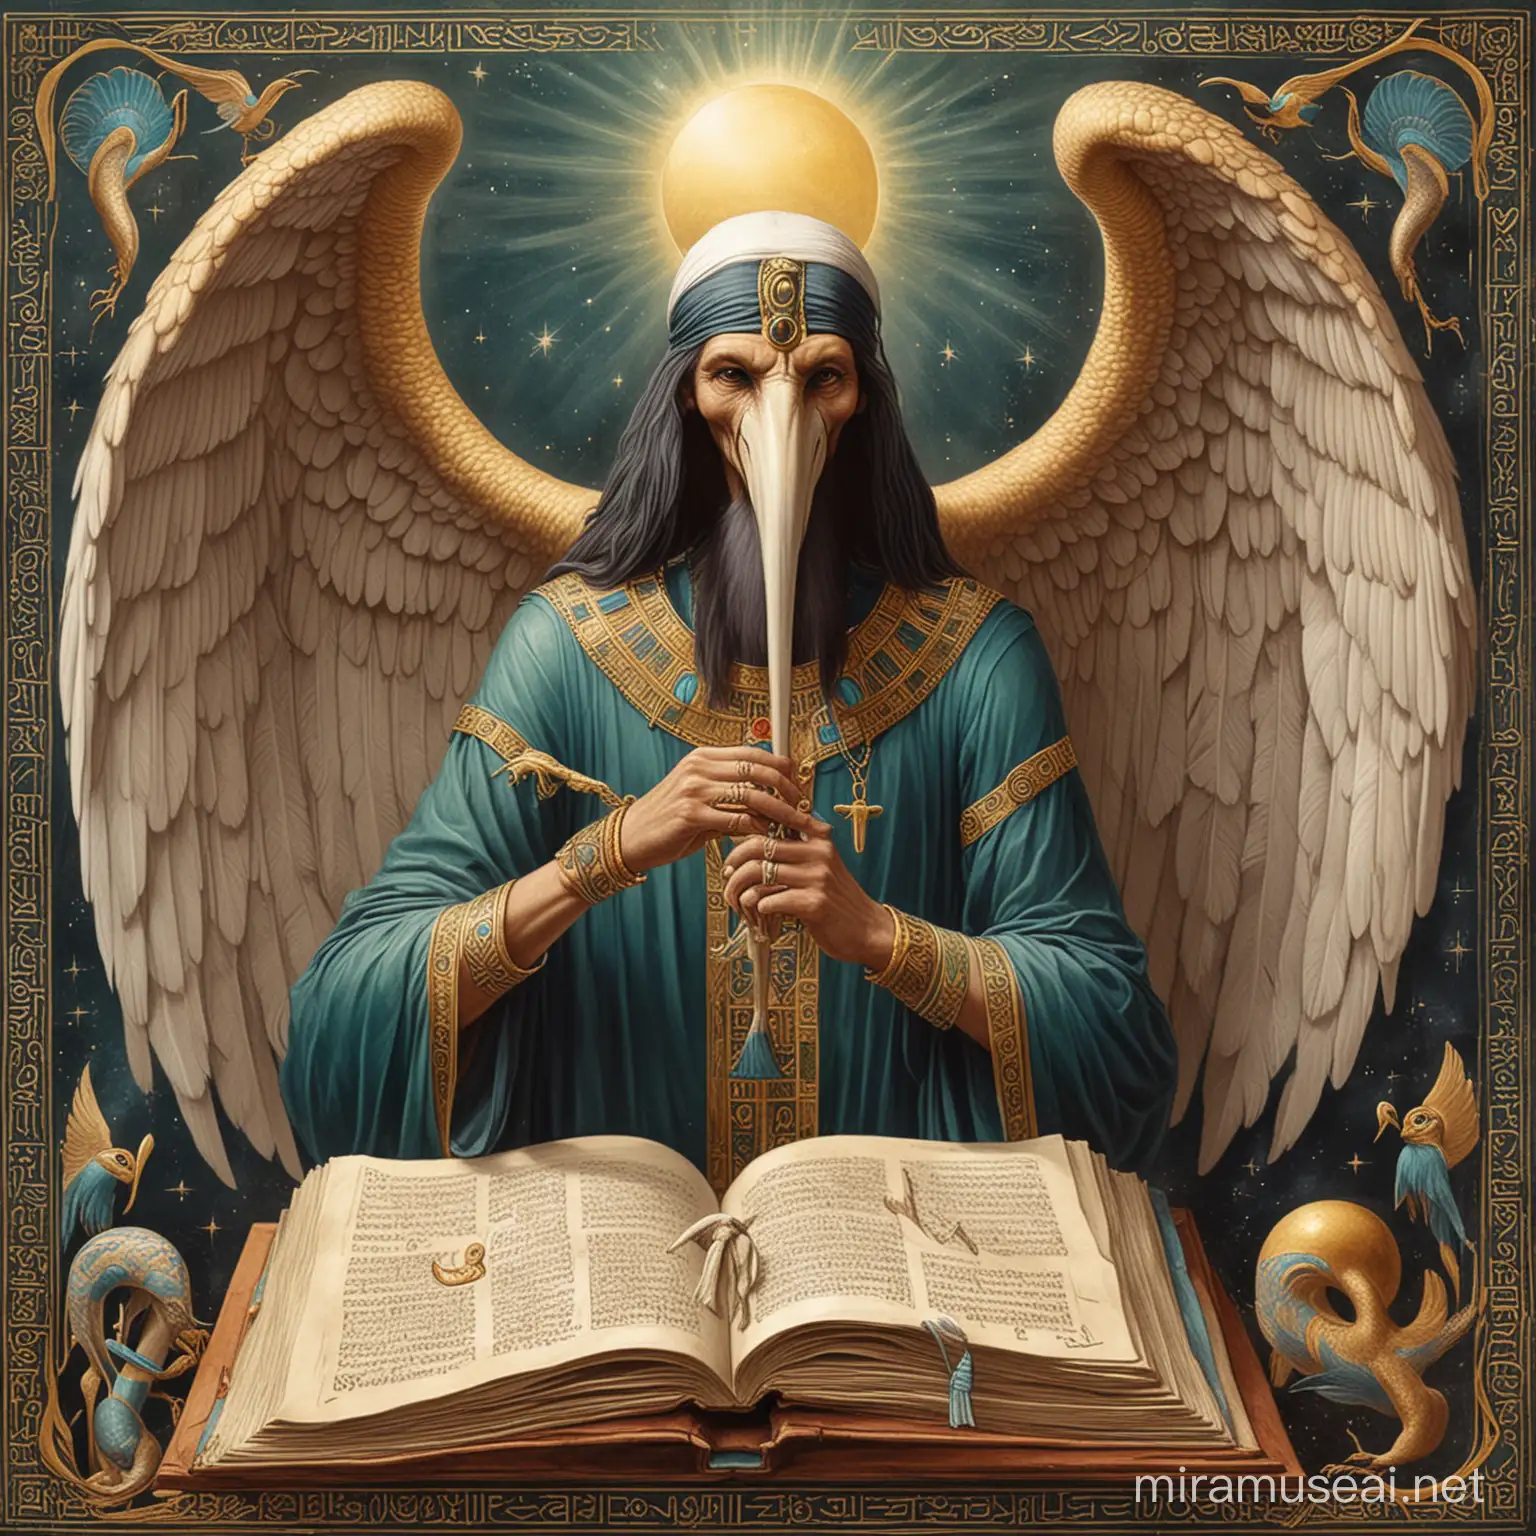 Dieu Thot avec sa tête d'Ibis et ses ailes comme un ange. Il est le scribe des autres dieux. Il représente la sagesse, les sciences et l'écriture. C'est un magicien également. Il tient un livre ouvert qui illumine son visage. Il est dans un laboratoire de magicien. 